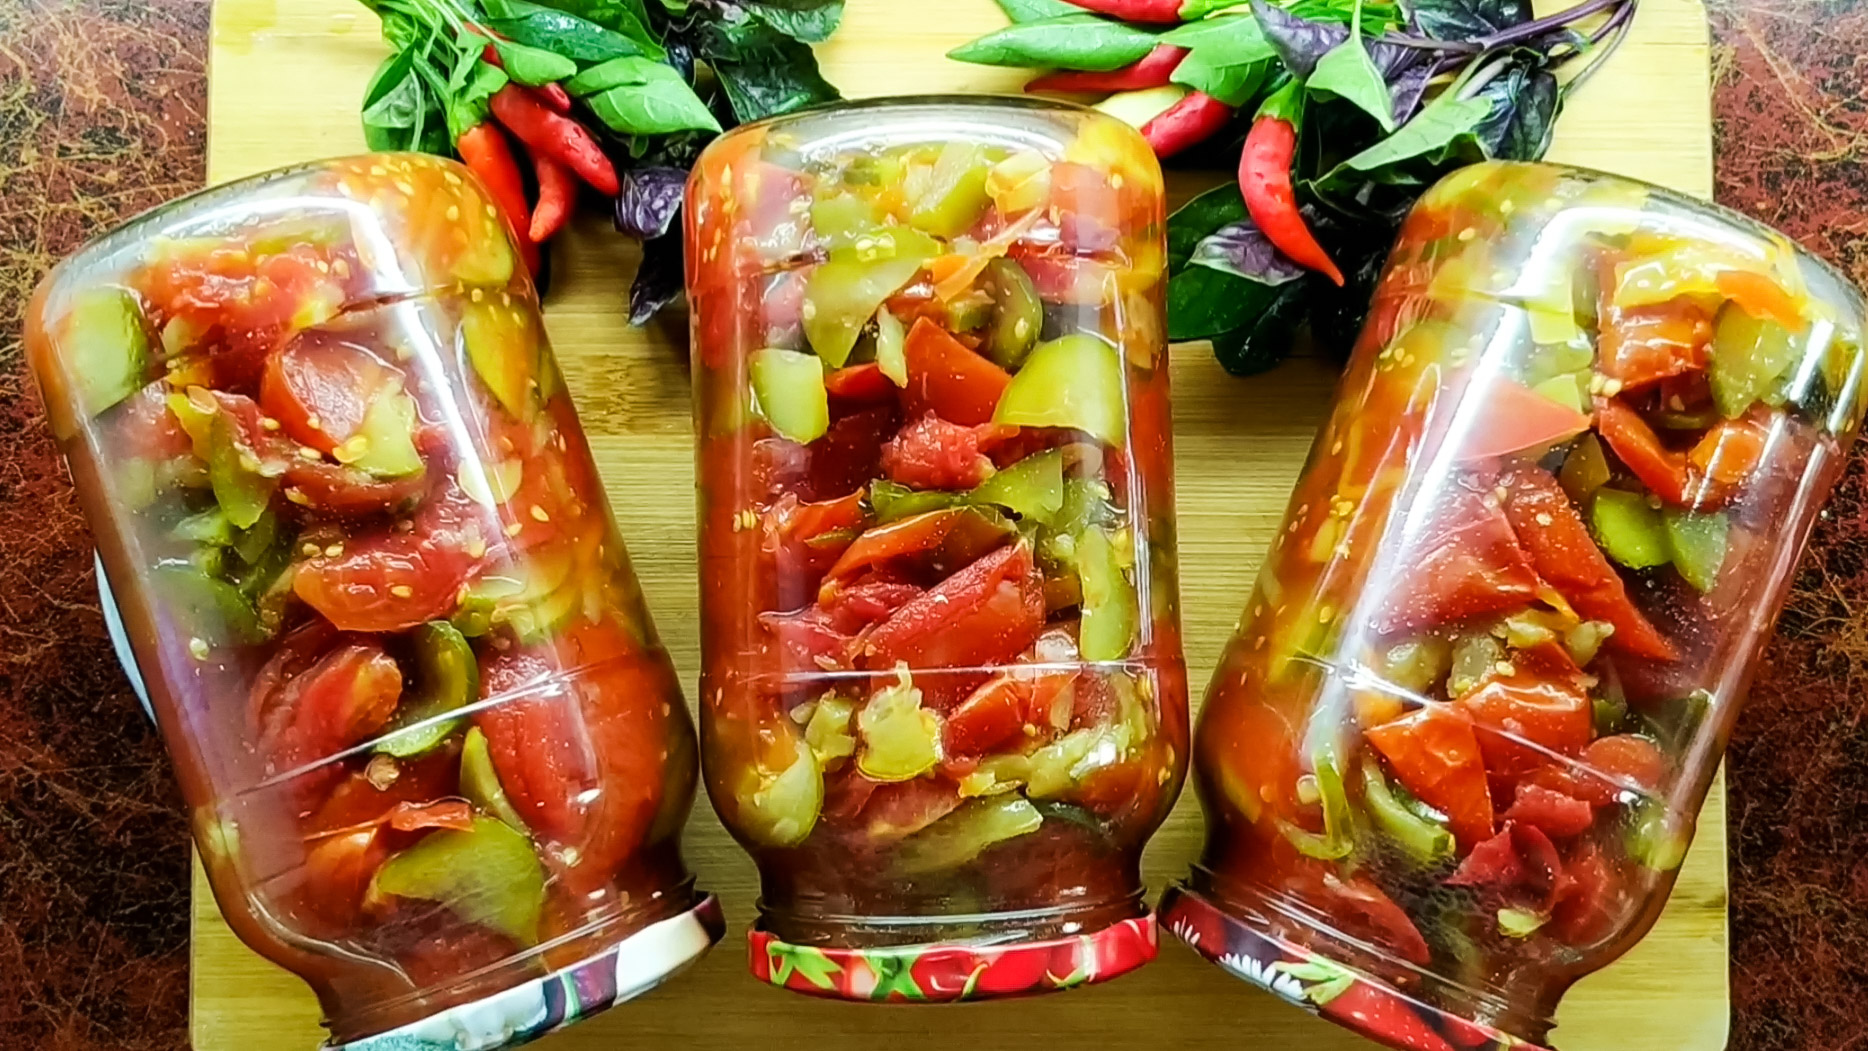 Салат из помидоров без перца на зиму - рецепта пальчики оближешь с пошаговыми фото